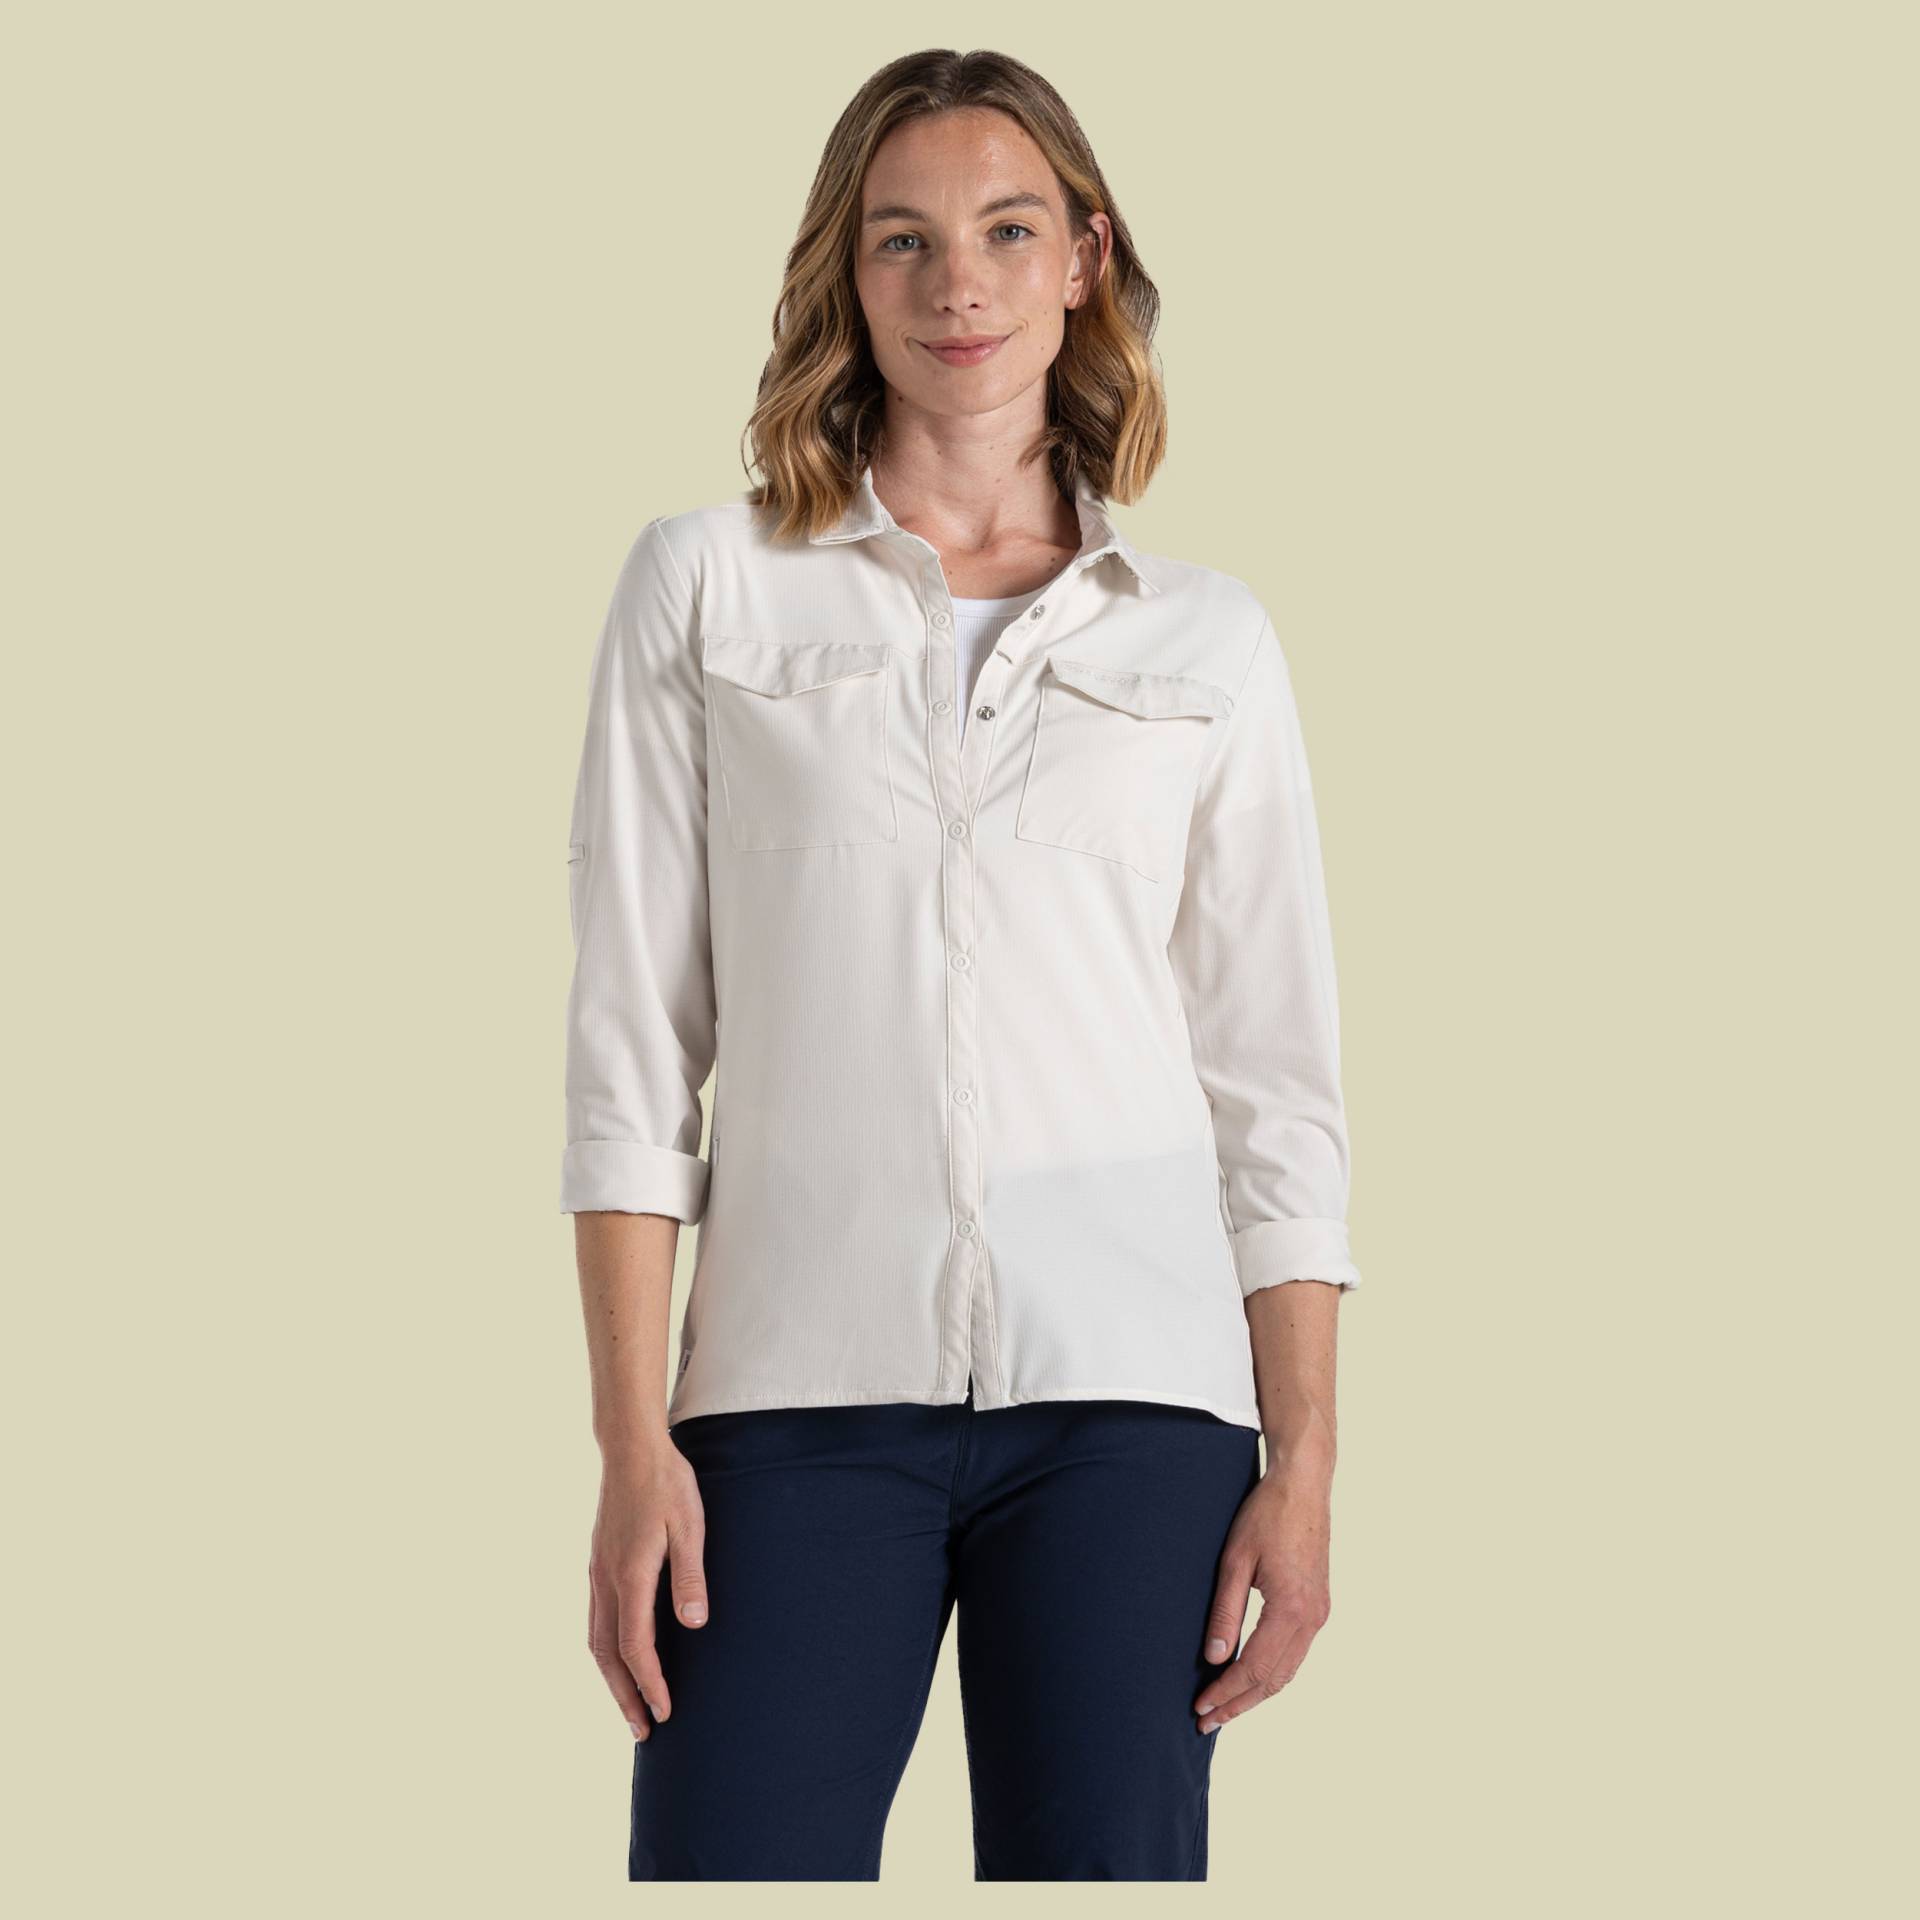 NosiLife Pro Long Sleeved Shirt V Women 34 beige - sea salt (UK 8) von Craghoppers